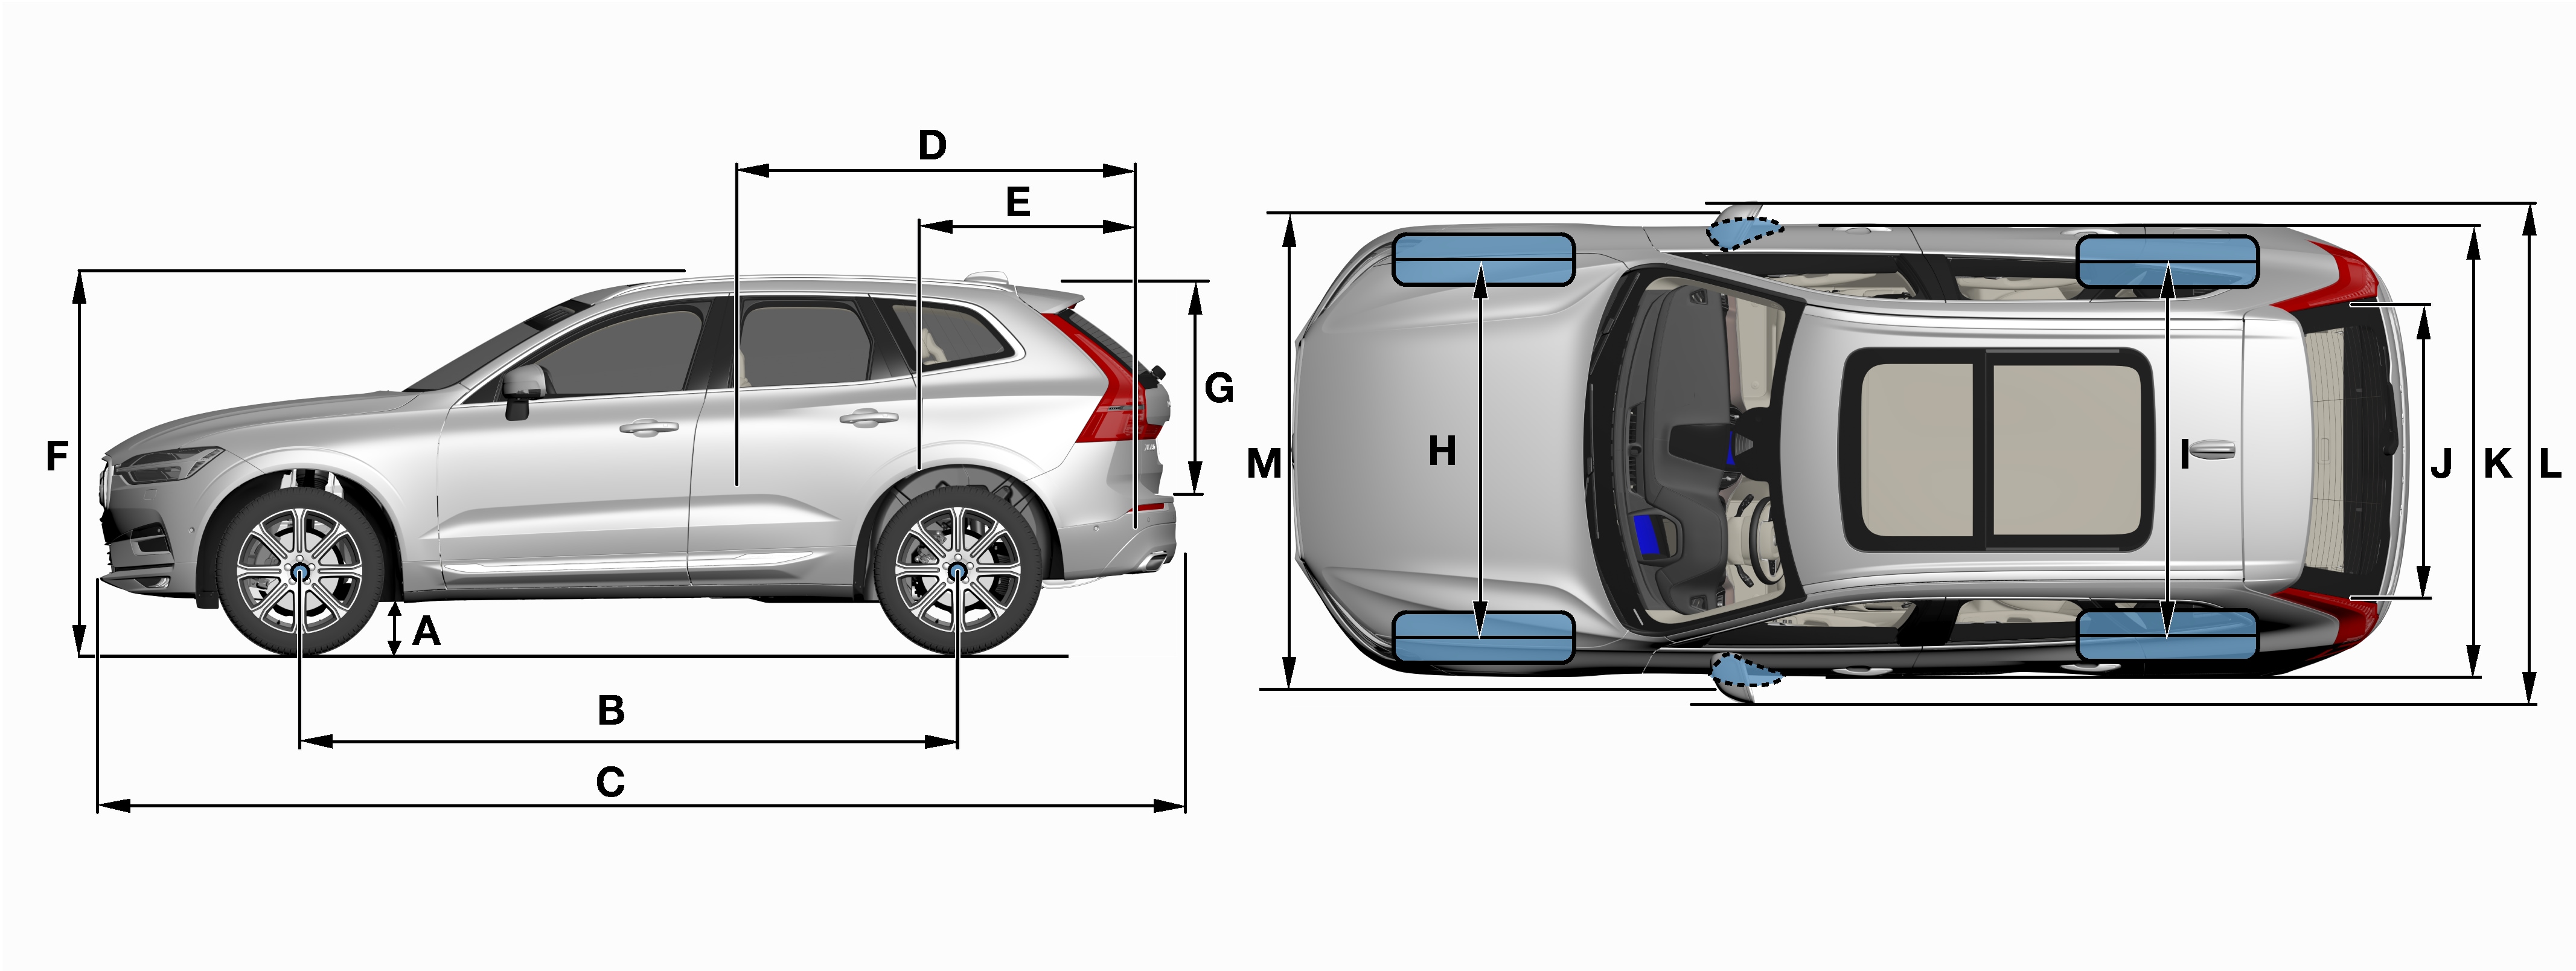 Volvo xc60 размеры авто autoinstructors.ru портал для автолюбителей